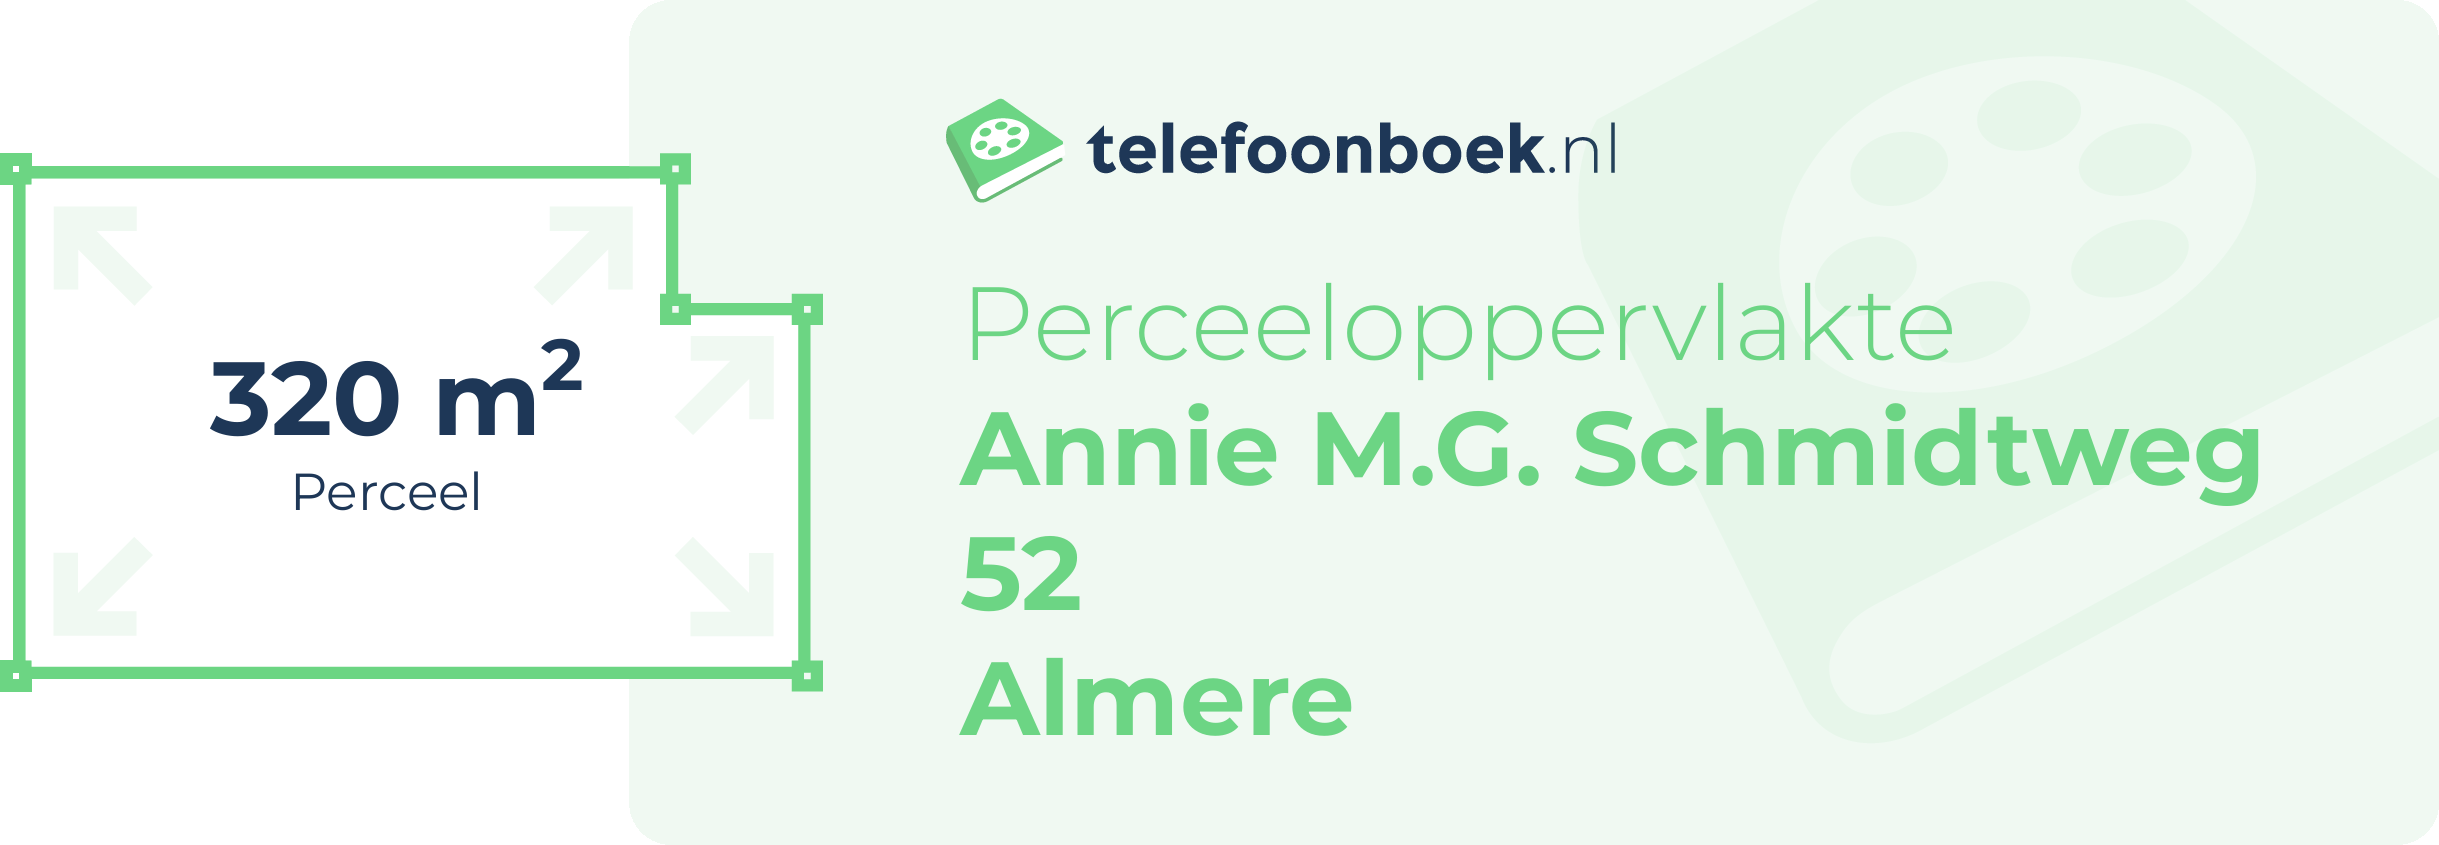 Perceeloppervlakte Annie M.G. Schmidtweg 52 Almere